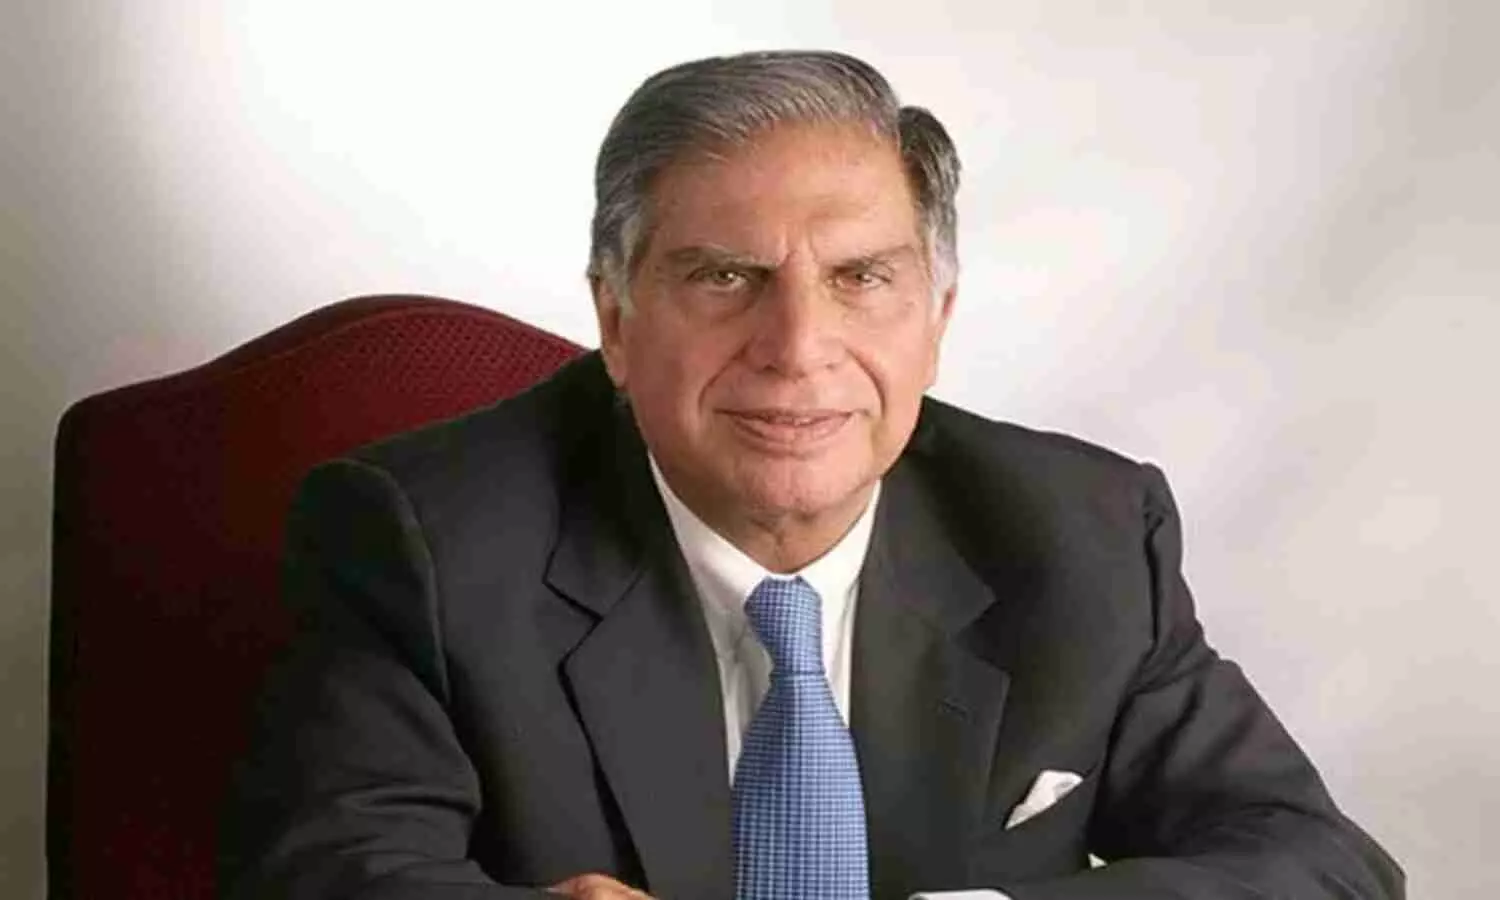 Threat call to Ratan Tata